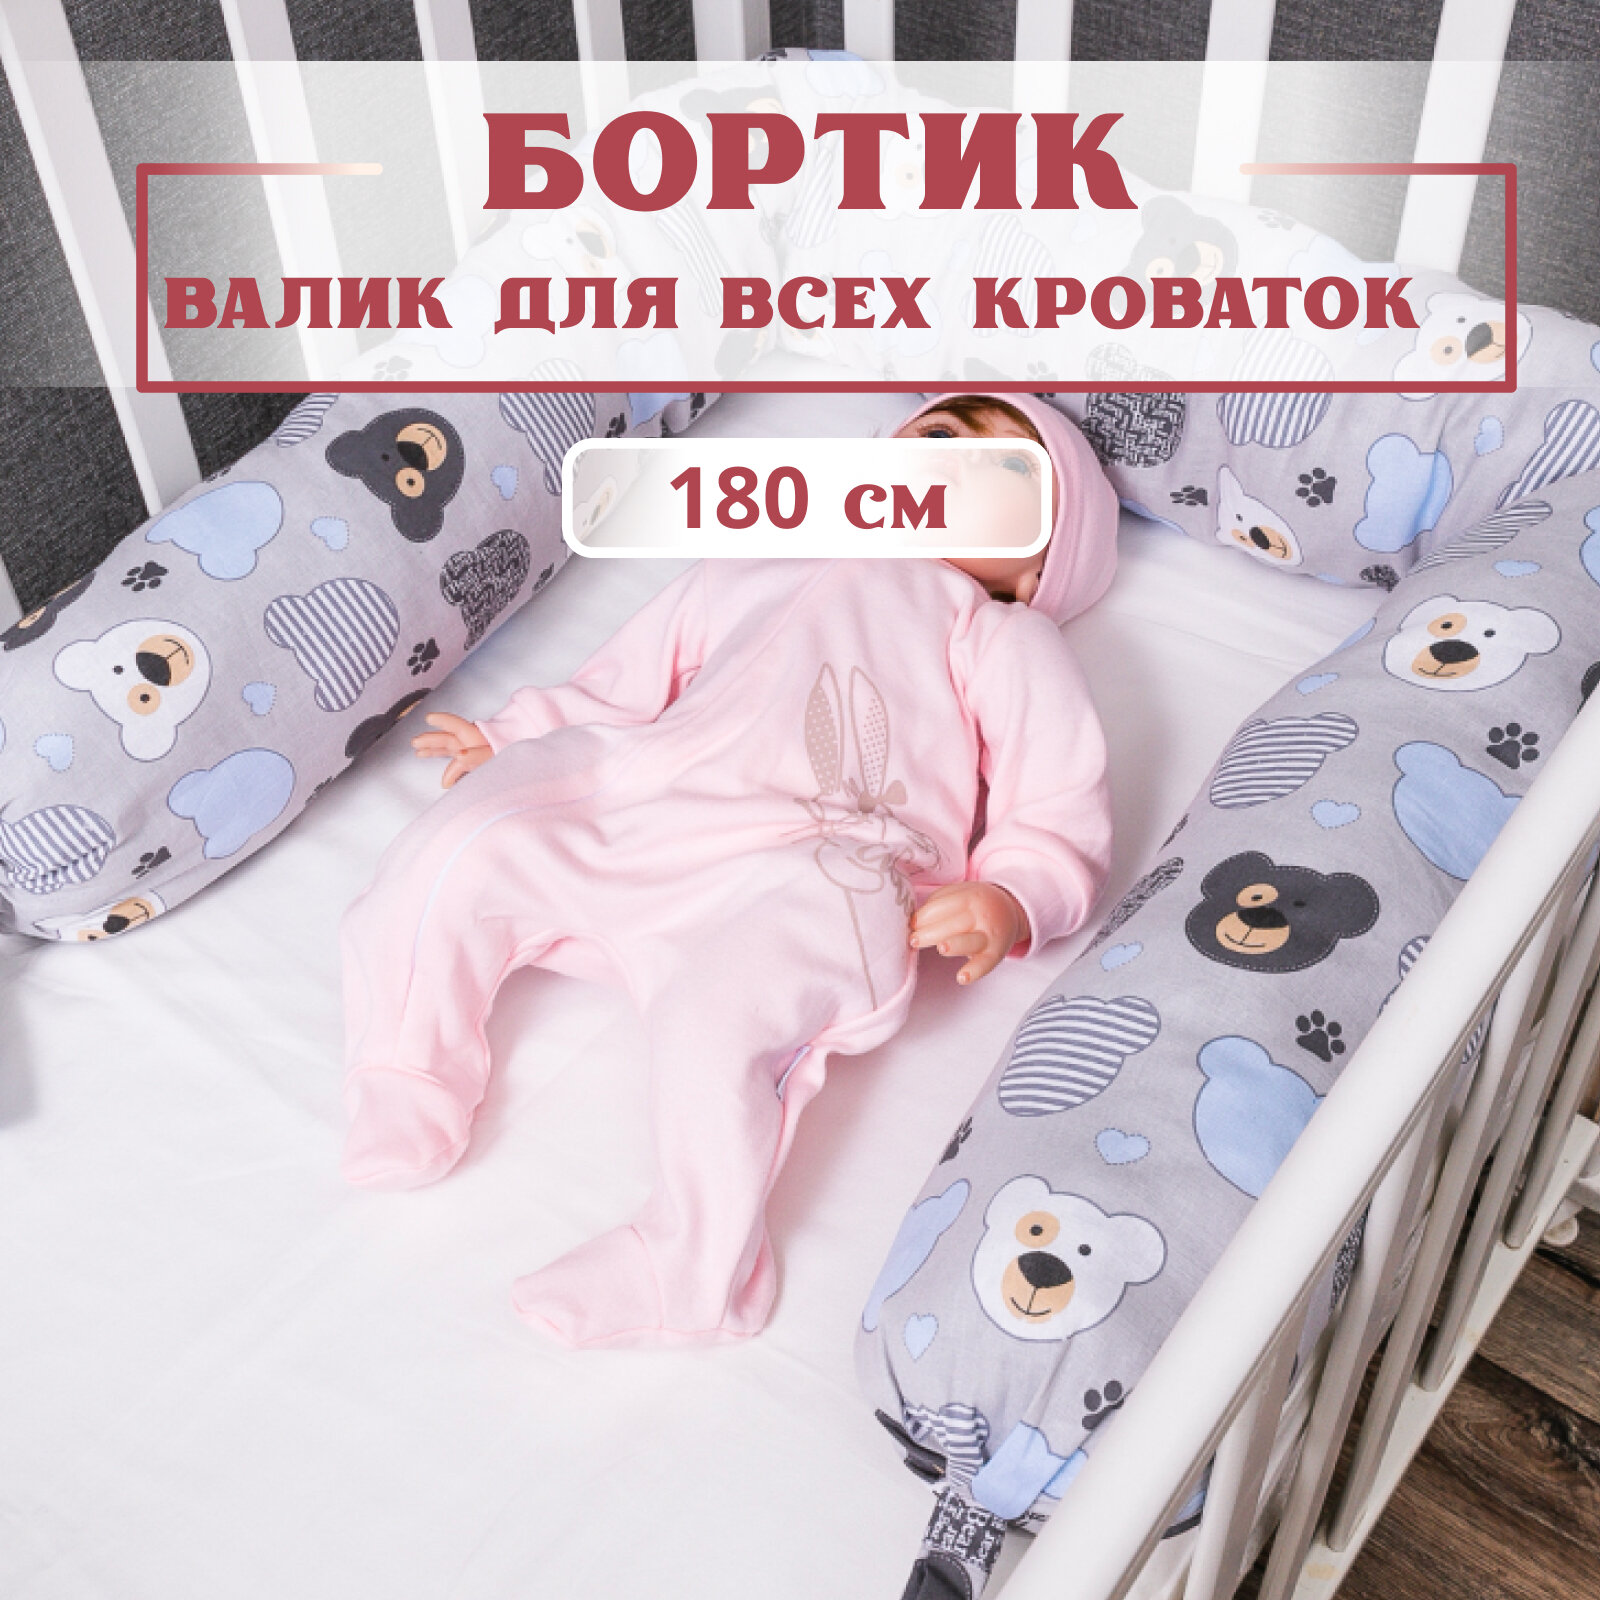 Бортик валик 180см для детской кроватки Texxet. Подушка ограничитель защита для игр коляски и сна новорожденных детей.